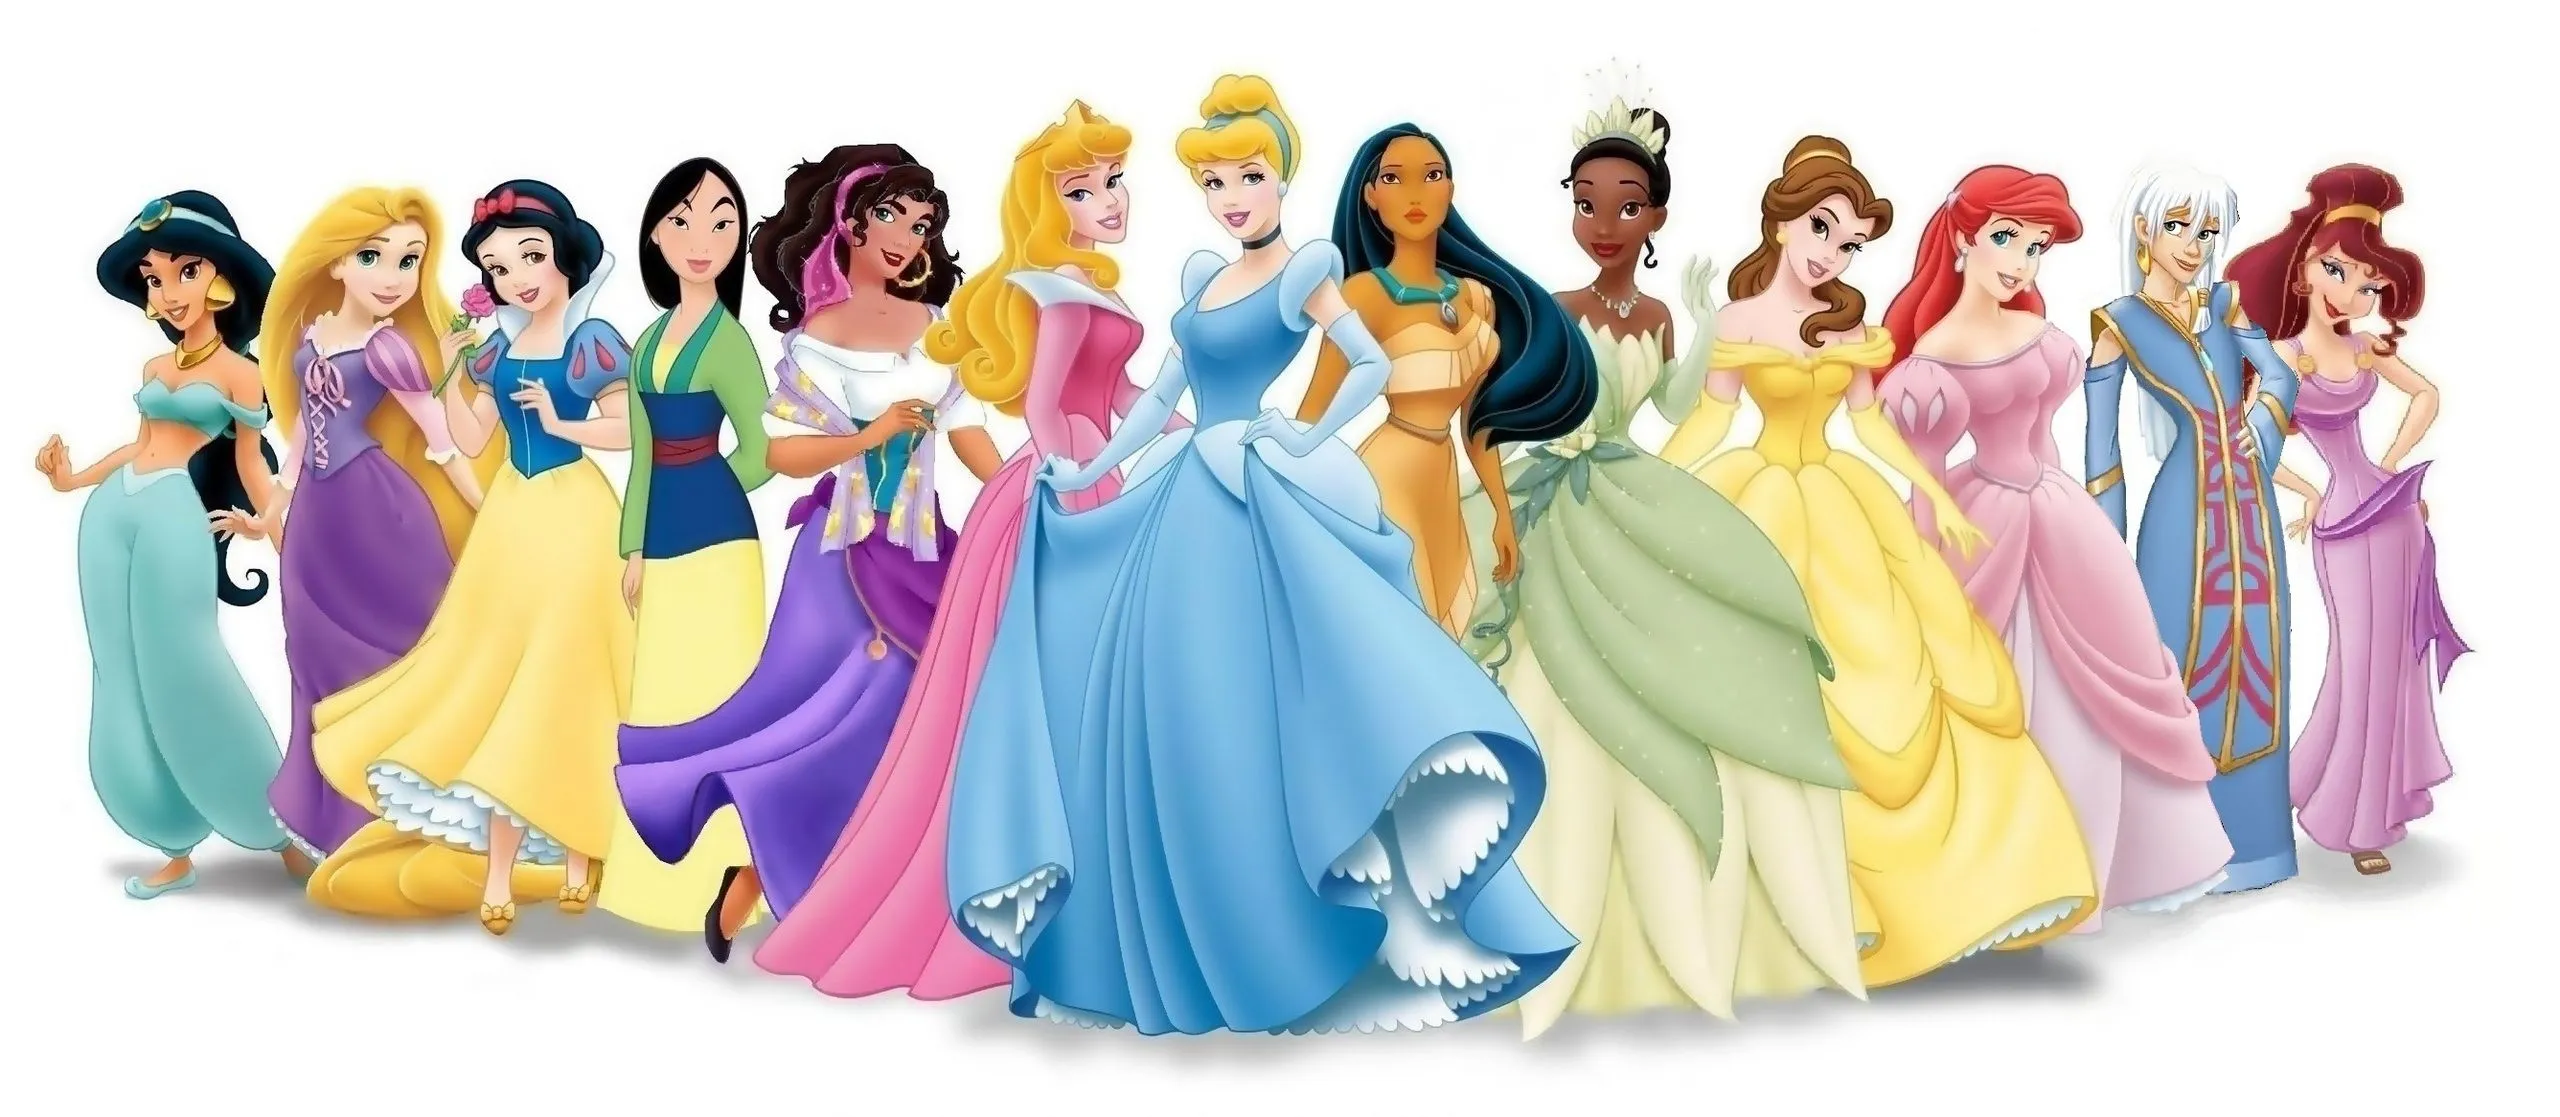 How A California Mom Designed The Ultimate Anti-Disney Princess ...